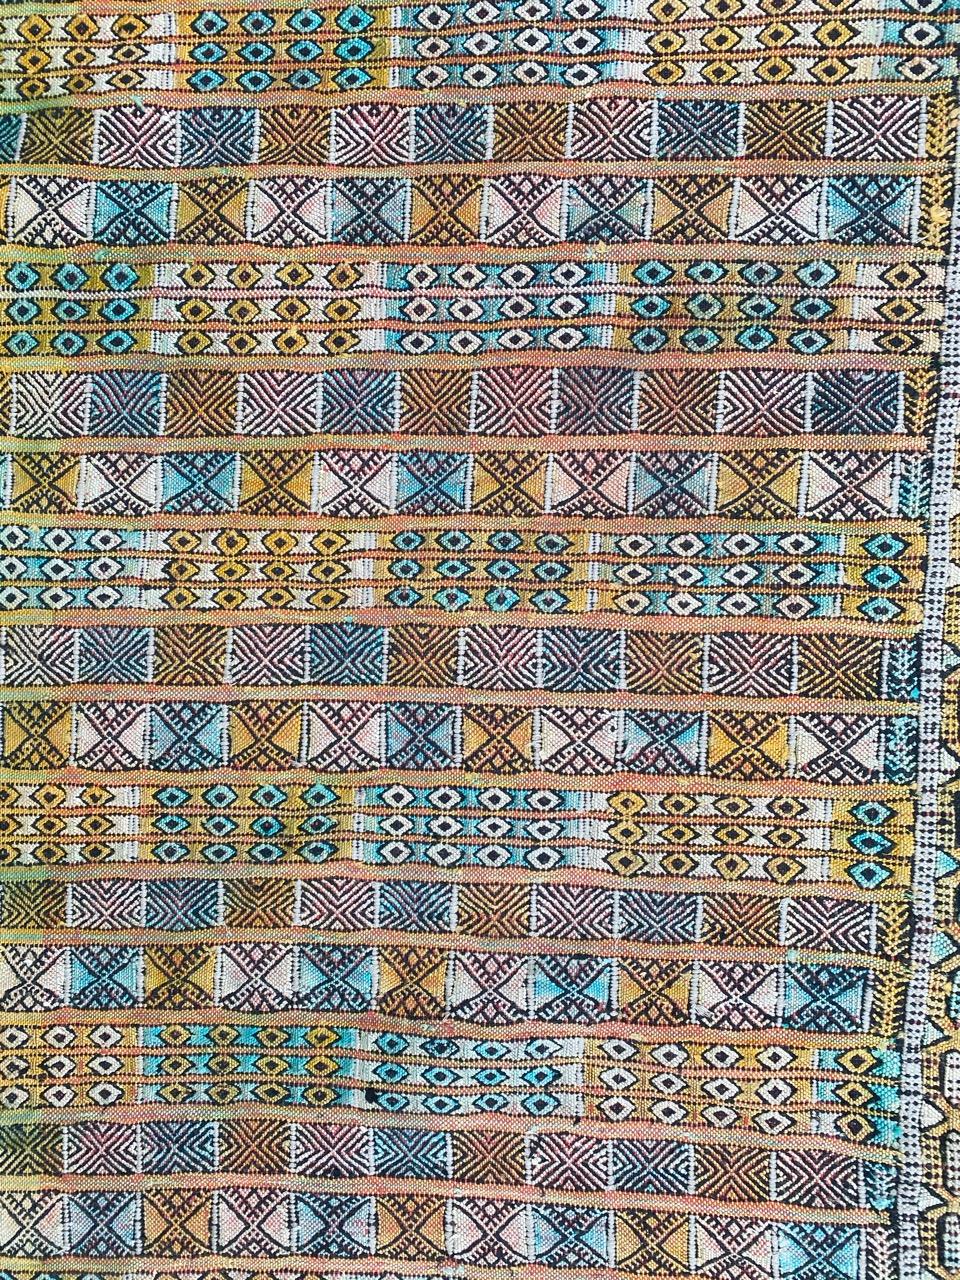 Schöner marokkanischer Flachgewebe-Teppich mit geometrischem Stammesmuster und schönen Farben, komplett handgewebt mit Wolle und Seide auf Baumwollbasis.

✨✨✨
